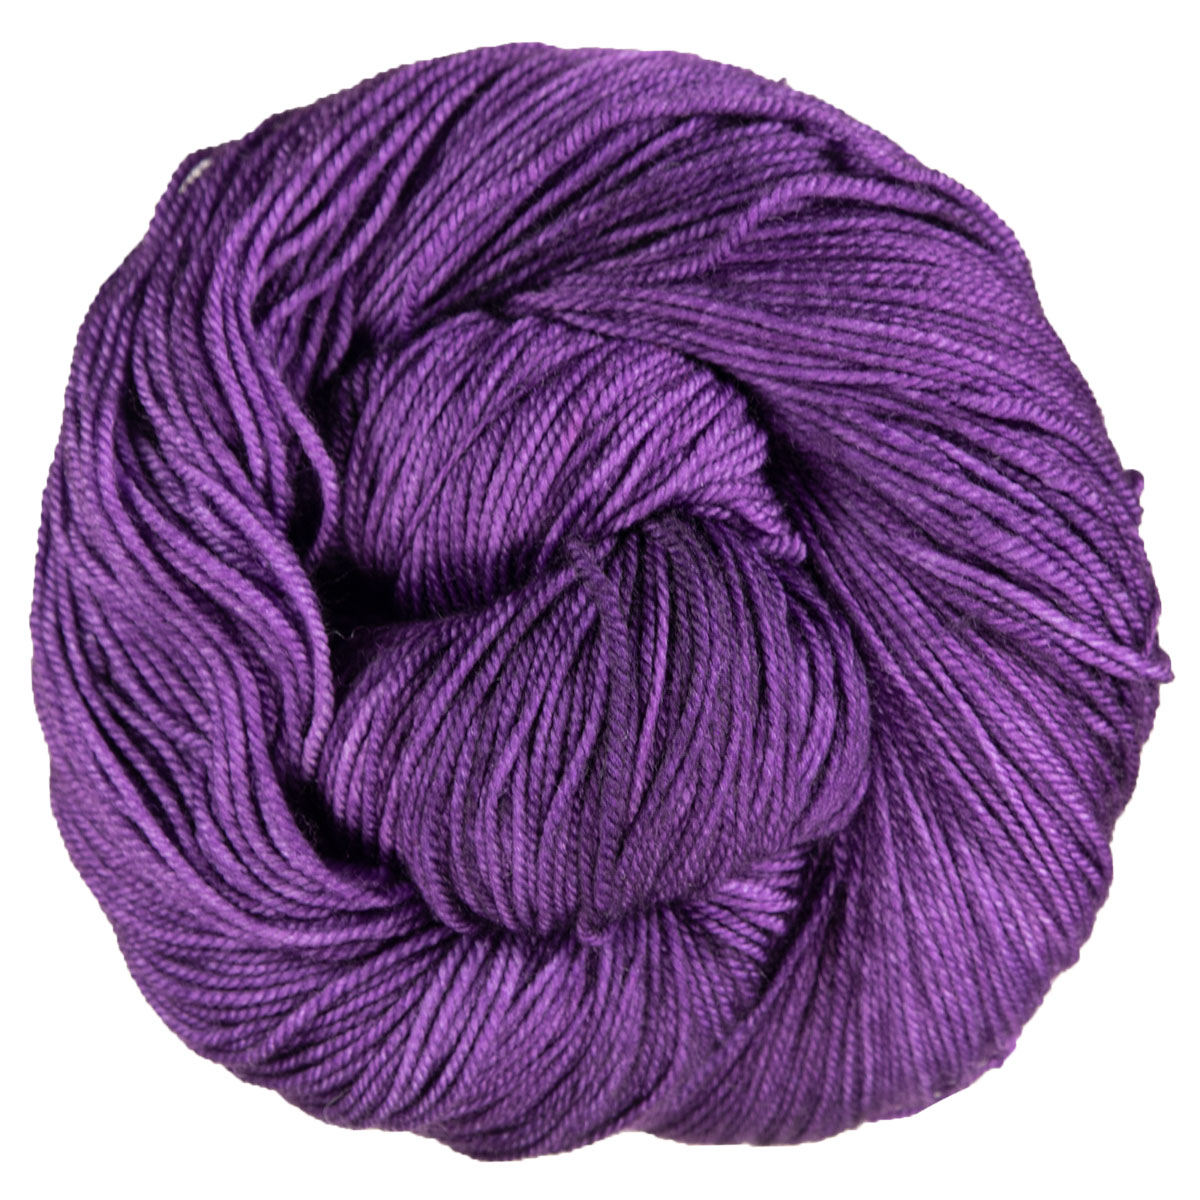 Malabrigo Sock Yarn - 808 Violeta Africana at Jimmy Beans Wool